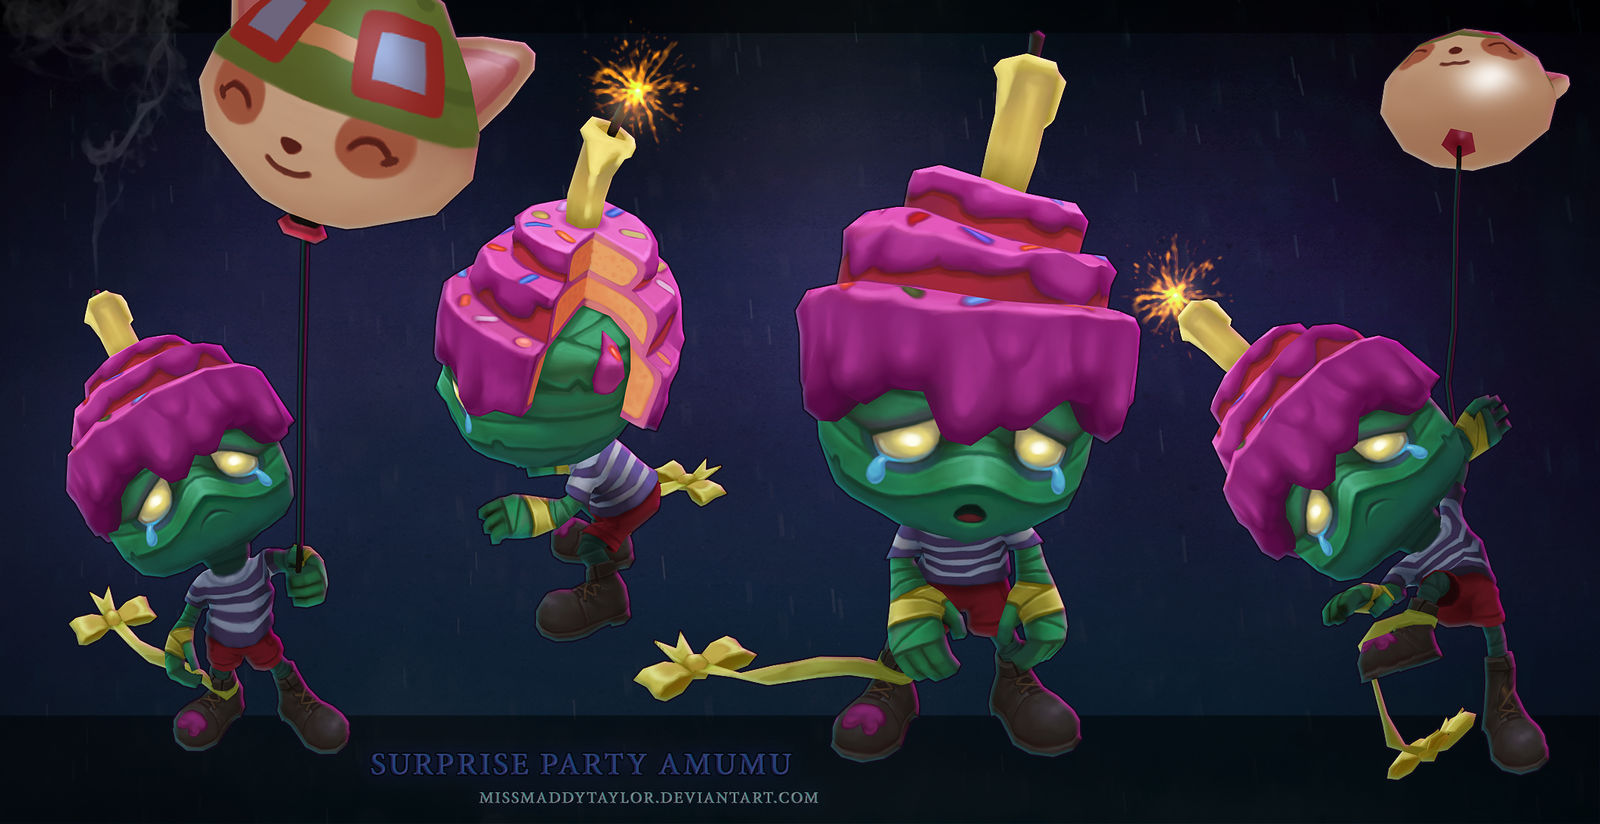 Surprise Party Amumu